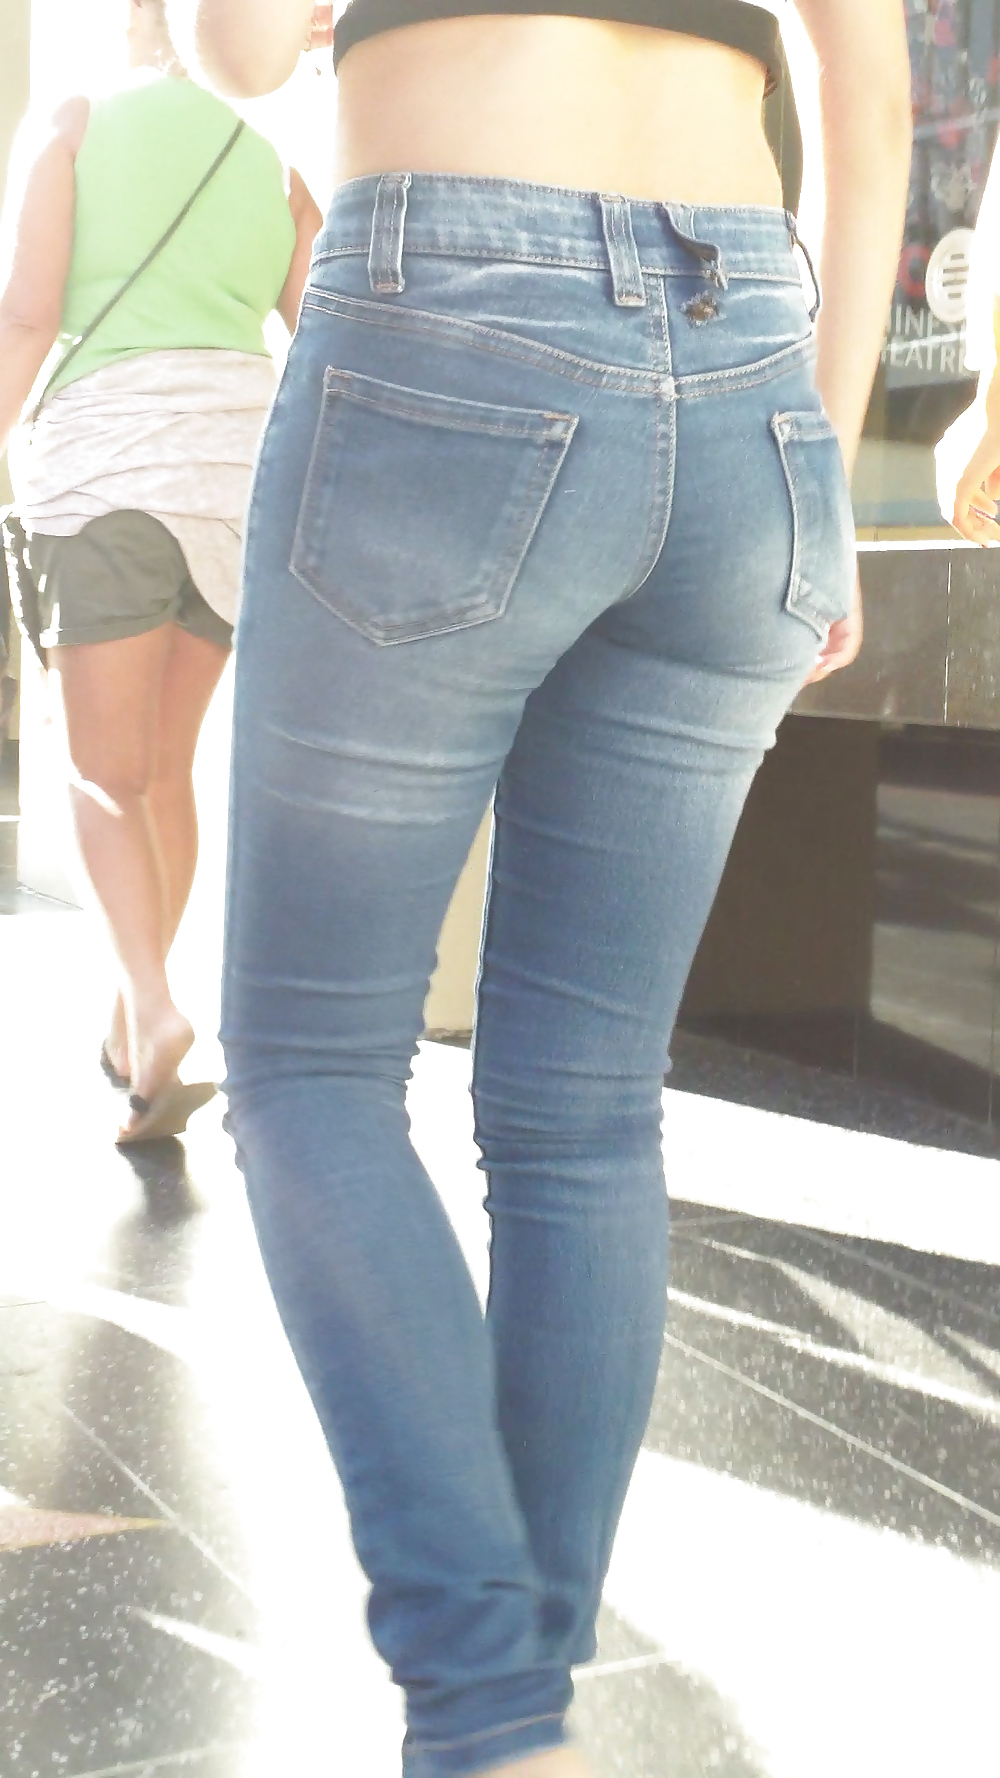 Beautiful cute tight teen ass & butt in blue jeans #21921739